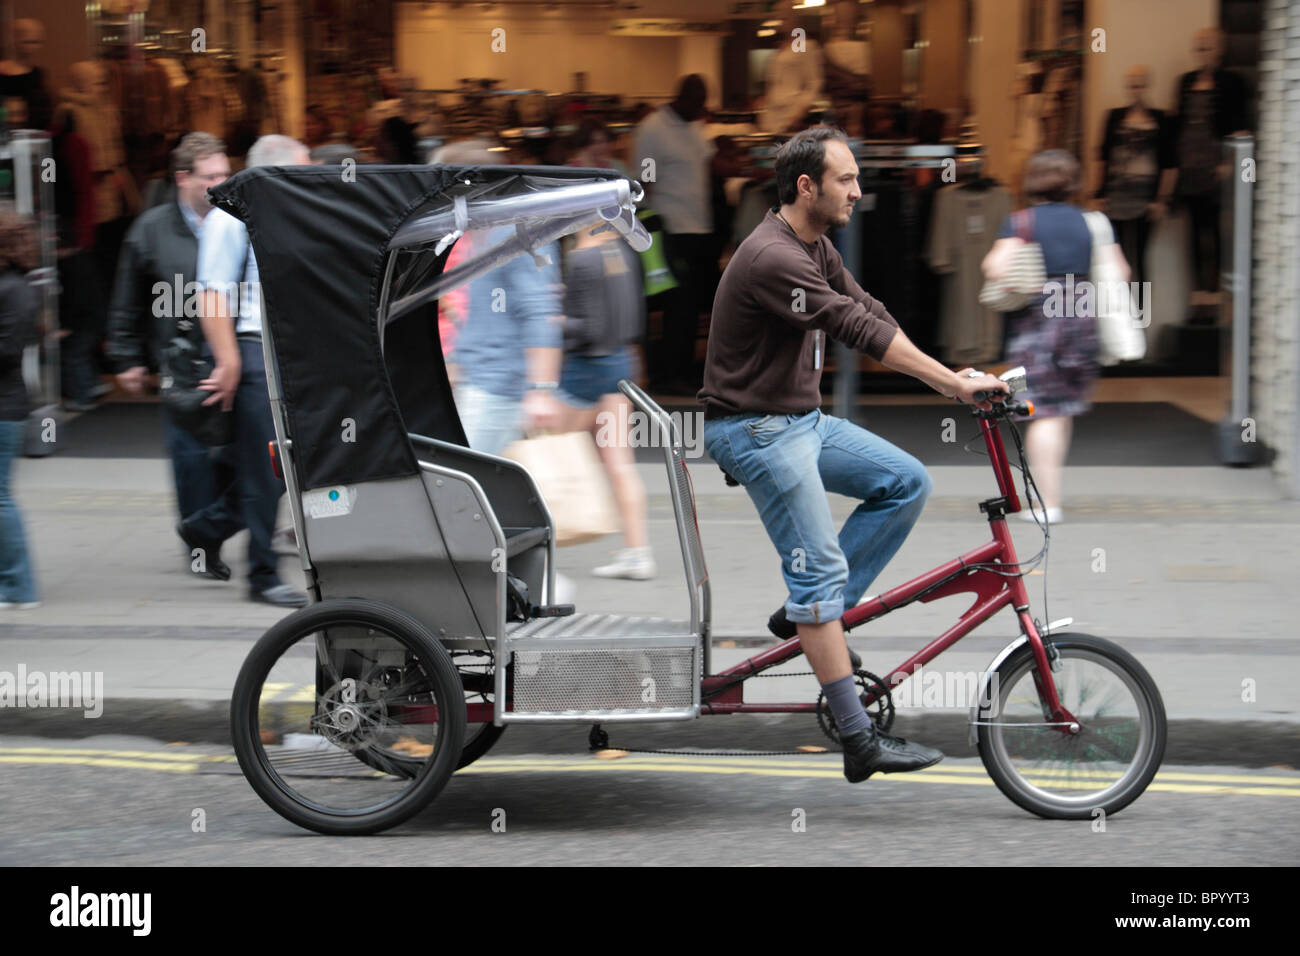 Un pedicab (taxi bicicletta o in rickshaw) spostamento verso il basso di Oxford Street, Londra, Regno Unito. (Deliberata/sfocatura movimento nell'immagine) Foto Stock